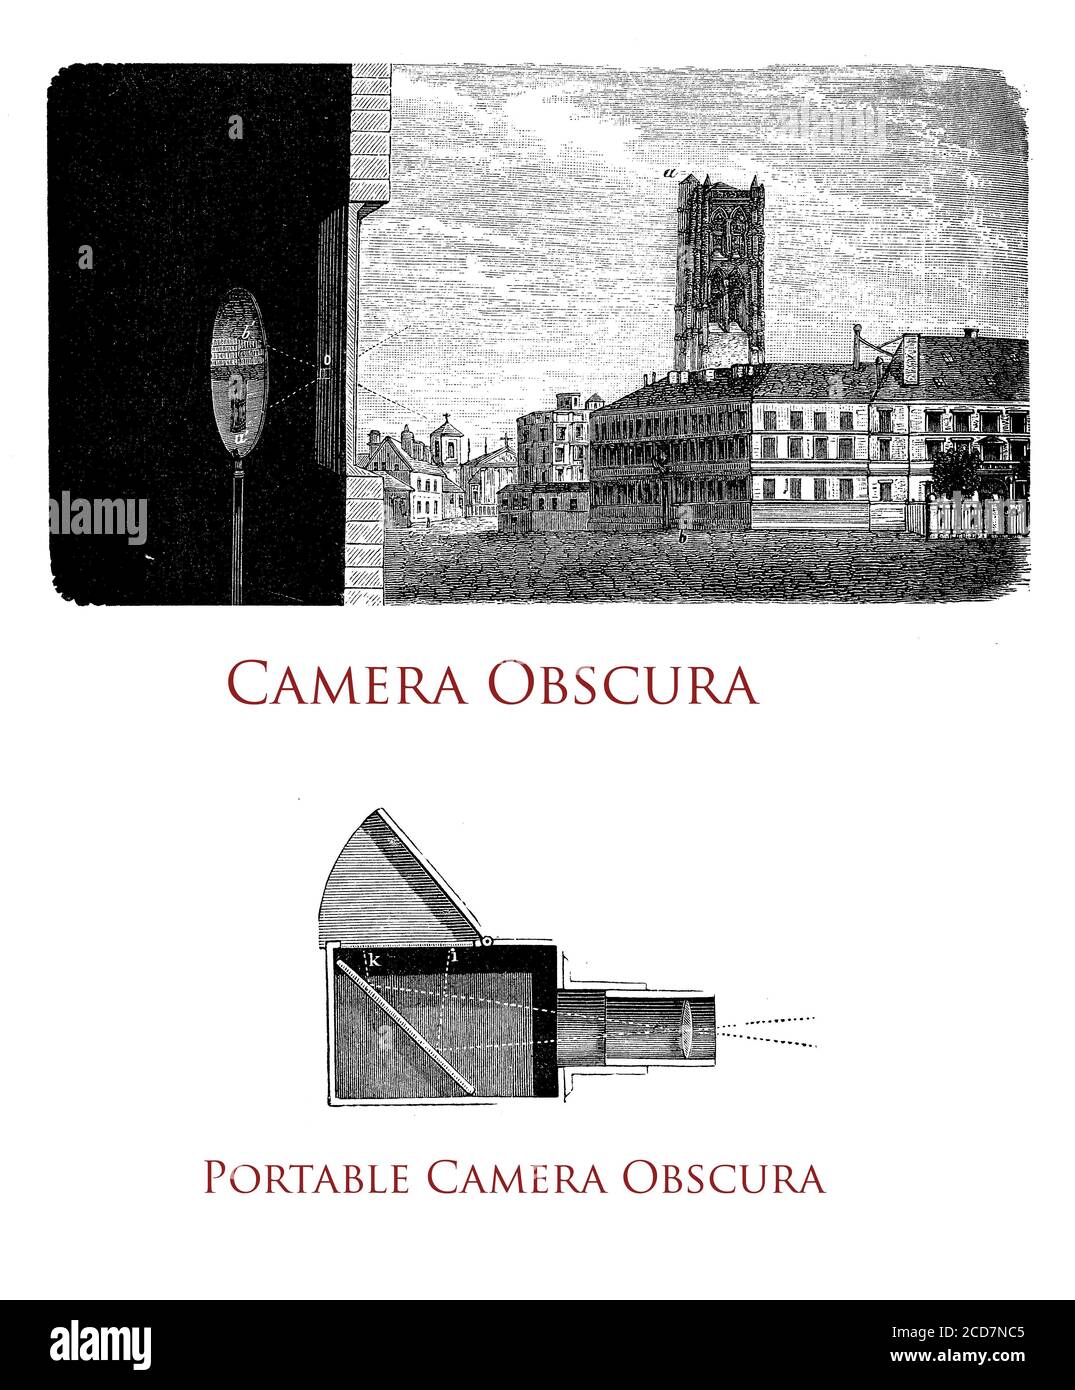 Camera obscura: Eine Szene wird umgekehrt und invertiert auf eine Leinwand projiziert, durch ein kleines Loch, Farbe und Perspektive erhalten. Camera oscura mit Objektiv wurde als Fotokamera weiterentwickelt Stockfoto